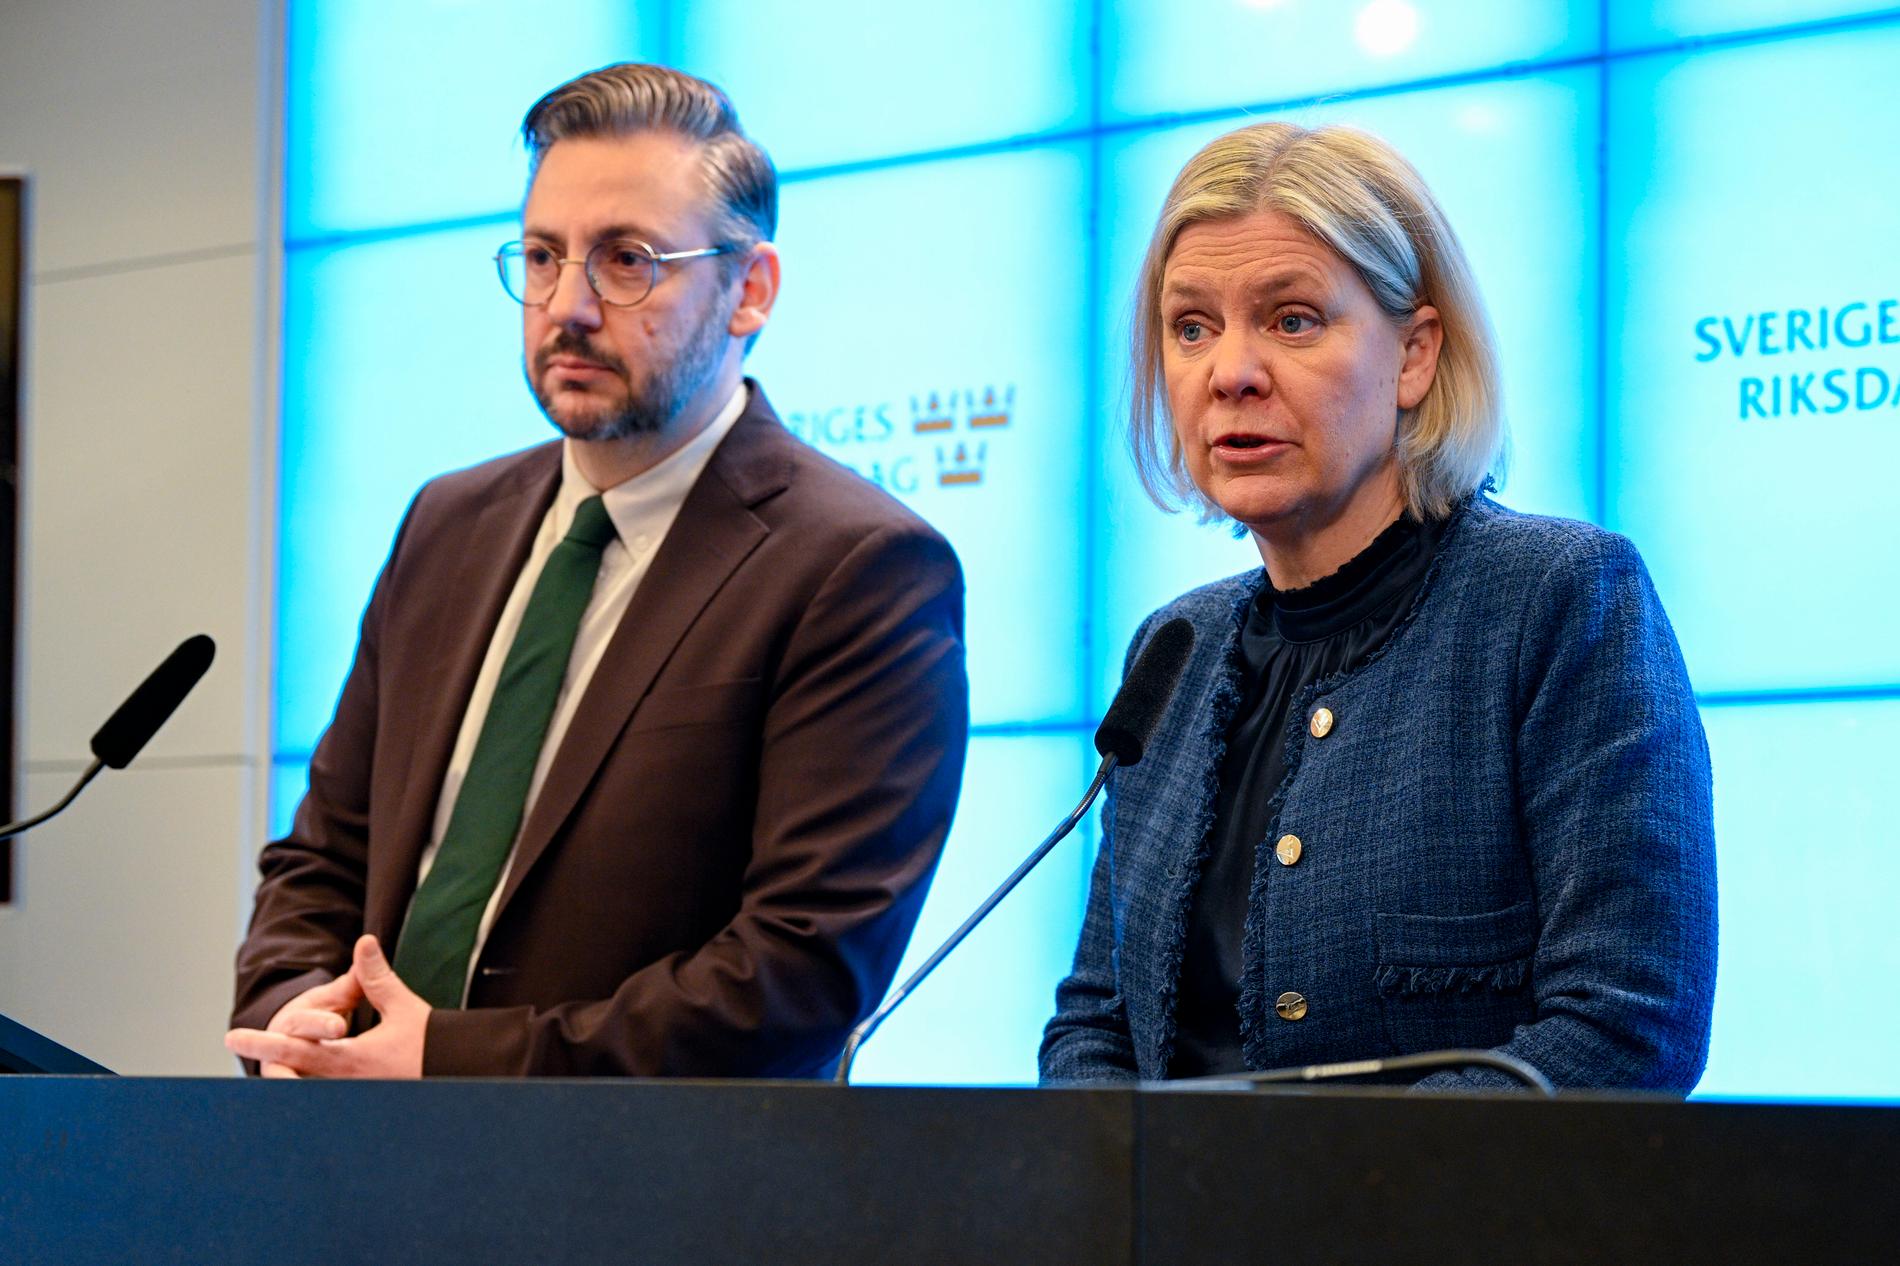 S periledare Magdalena Andersson och C:s partiledare Muharrem Demirok presenterade partiernas gemensamma miljöpolitik vid en pressträff på måndagsmorgonen. 